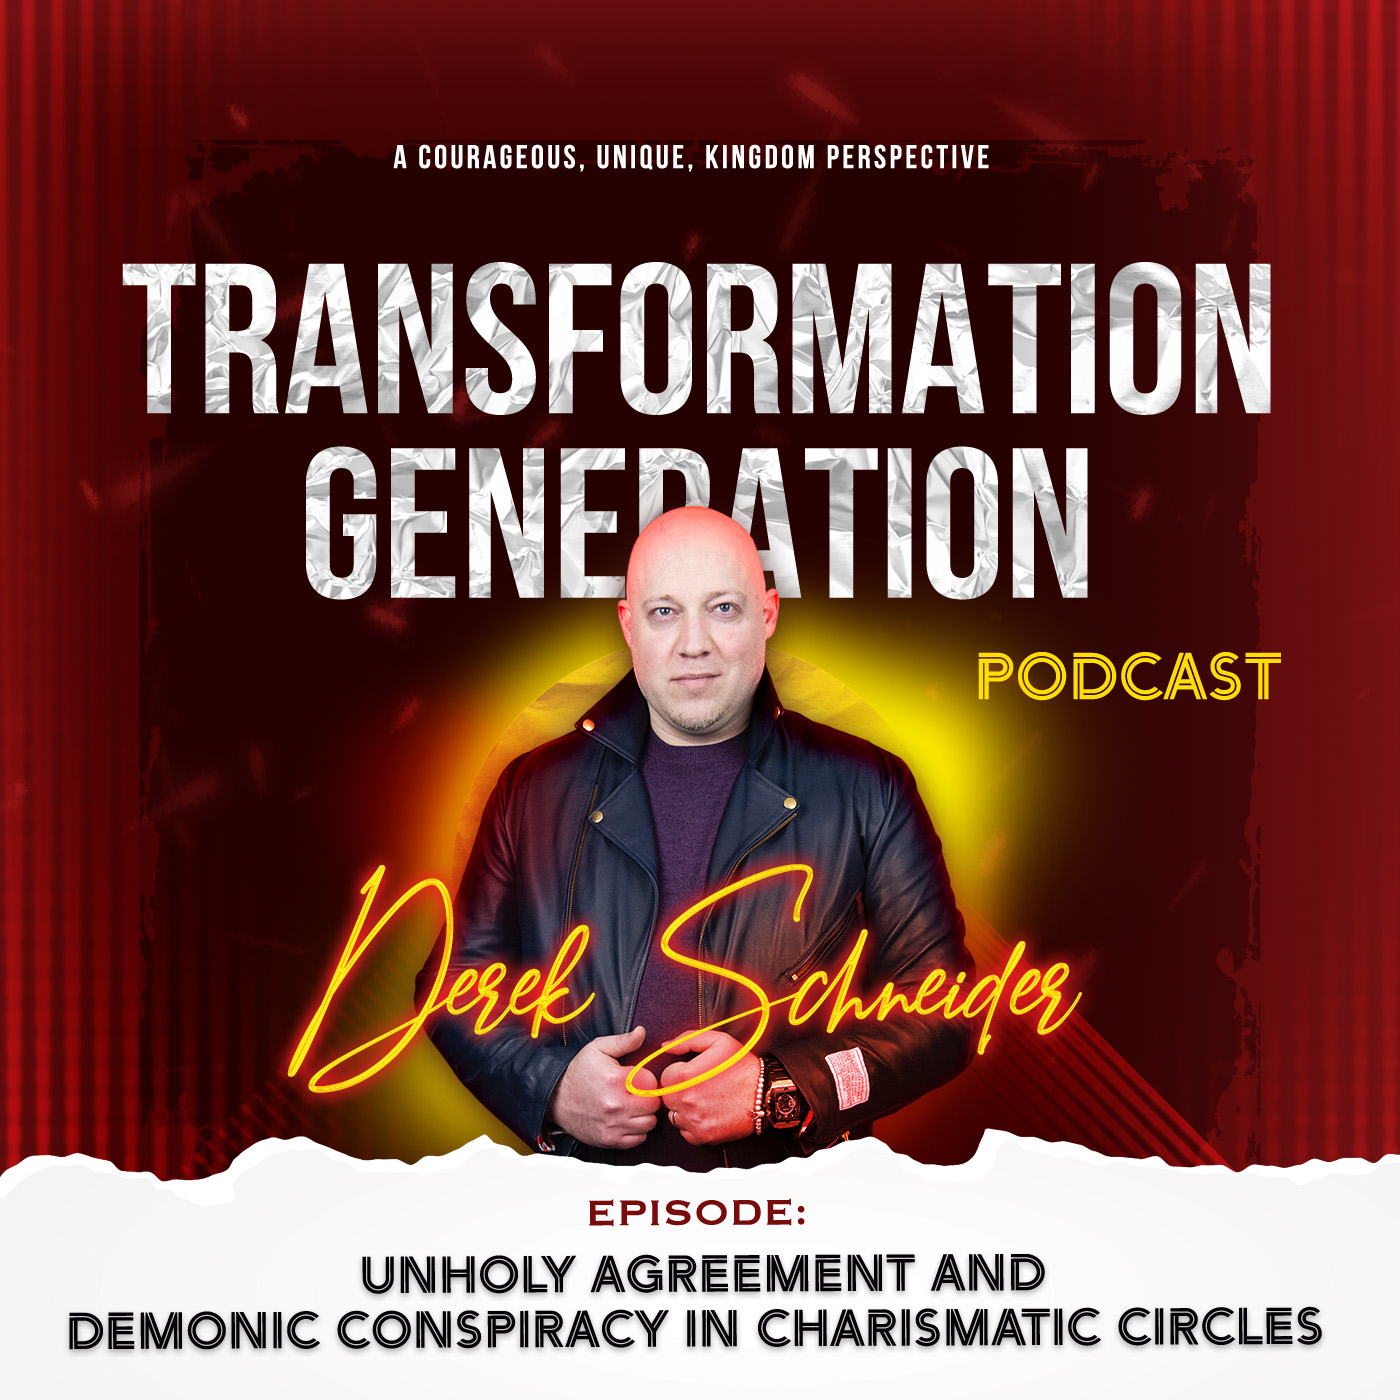 Transformation Generation with Derek Schneider